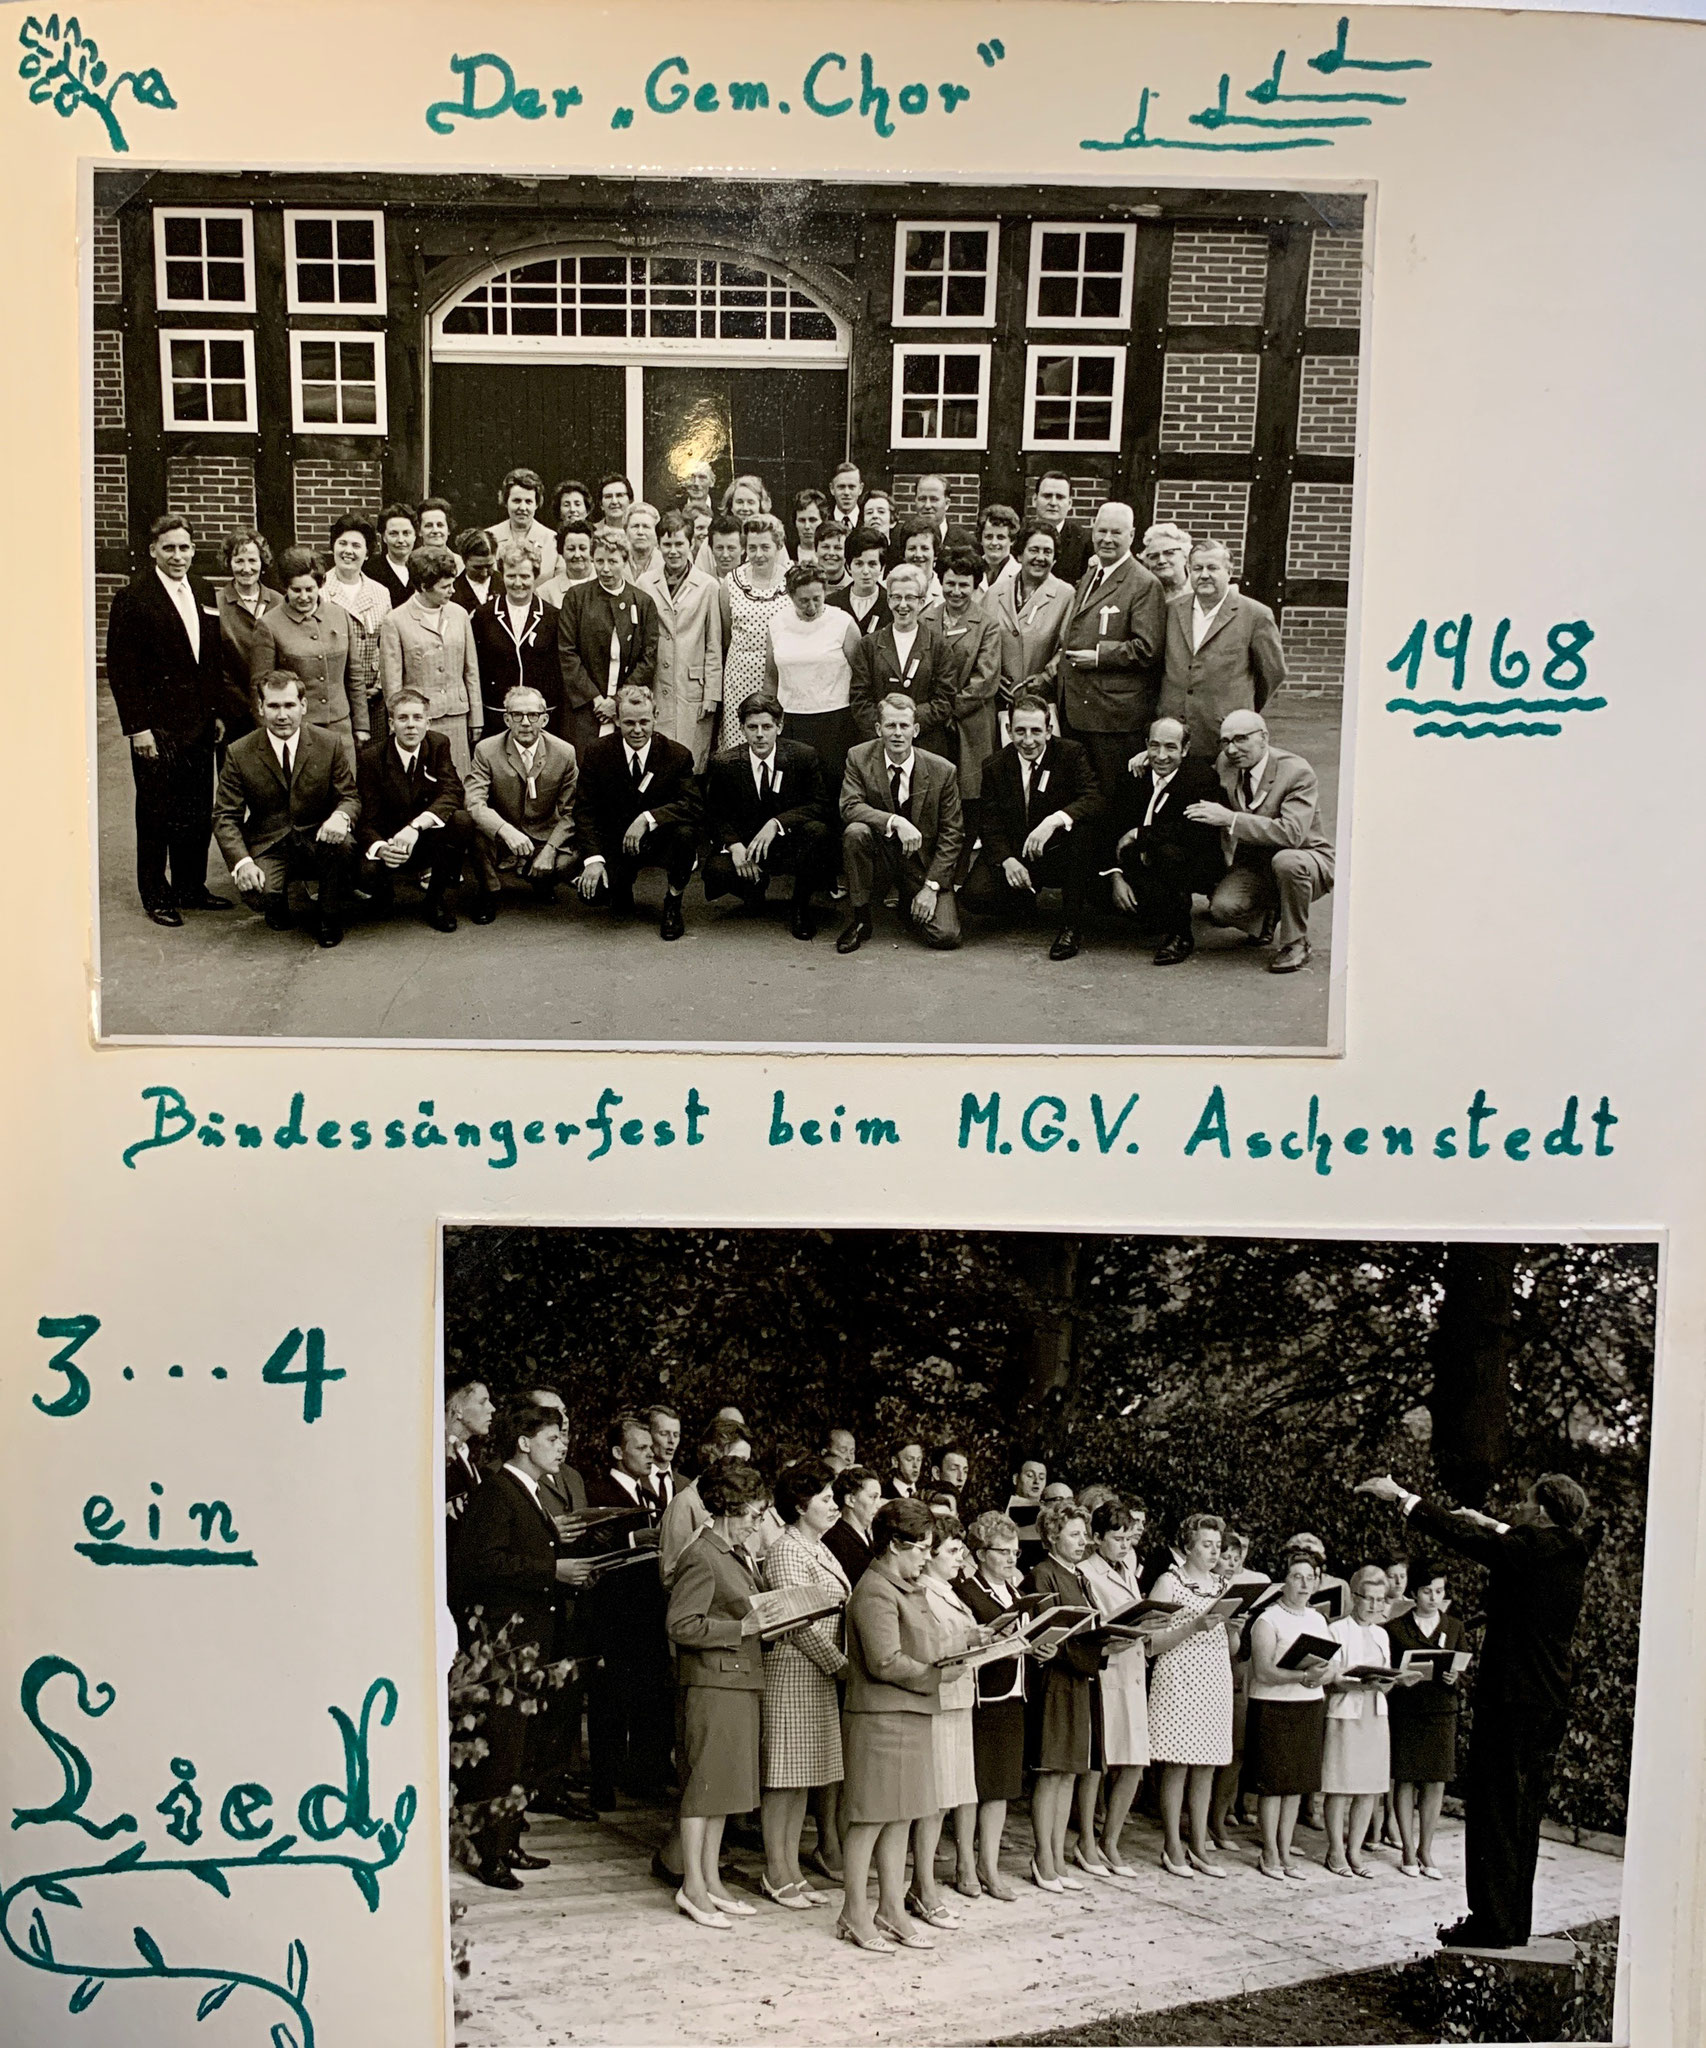 Bundessängerfest in Aschenstedt 1968